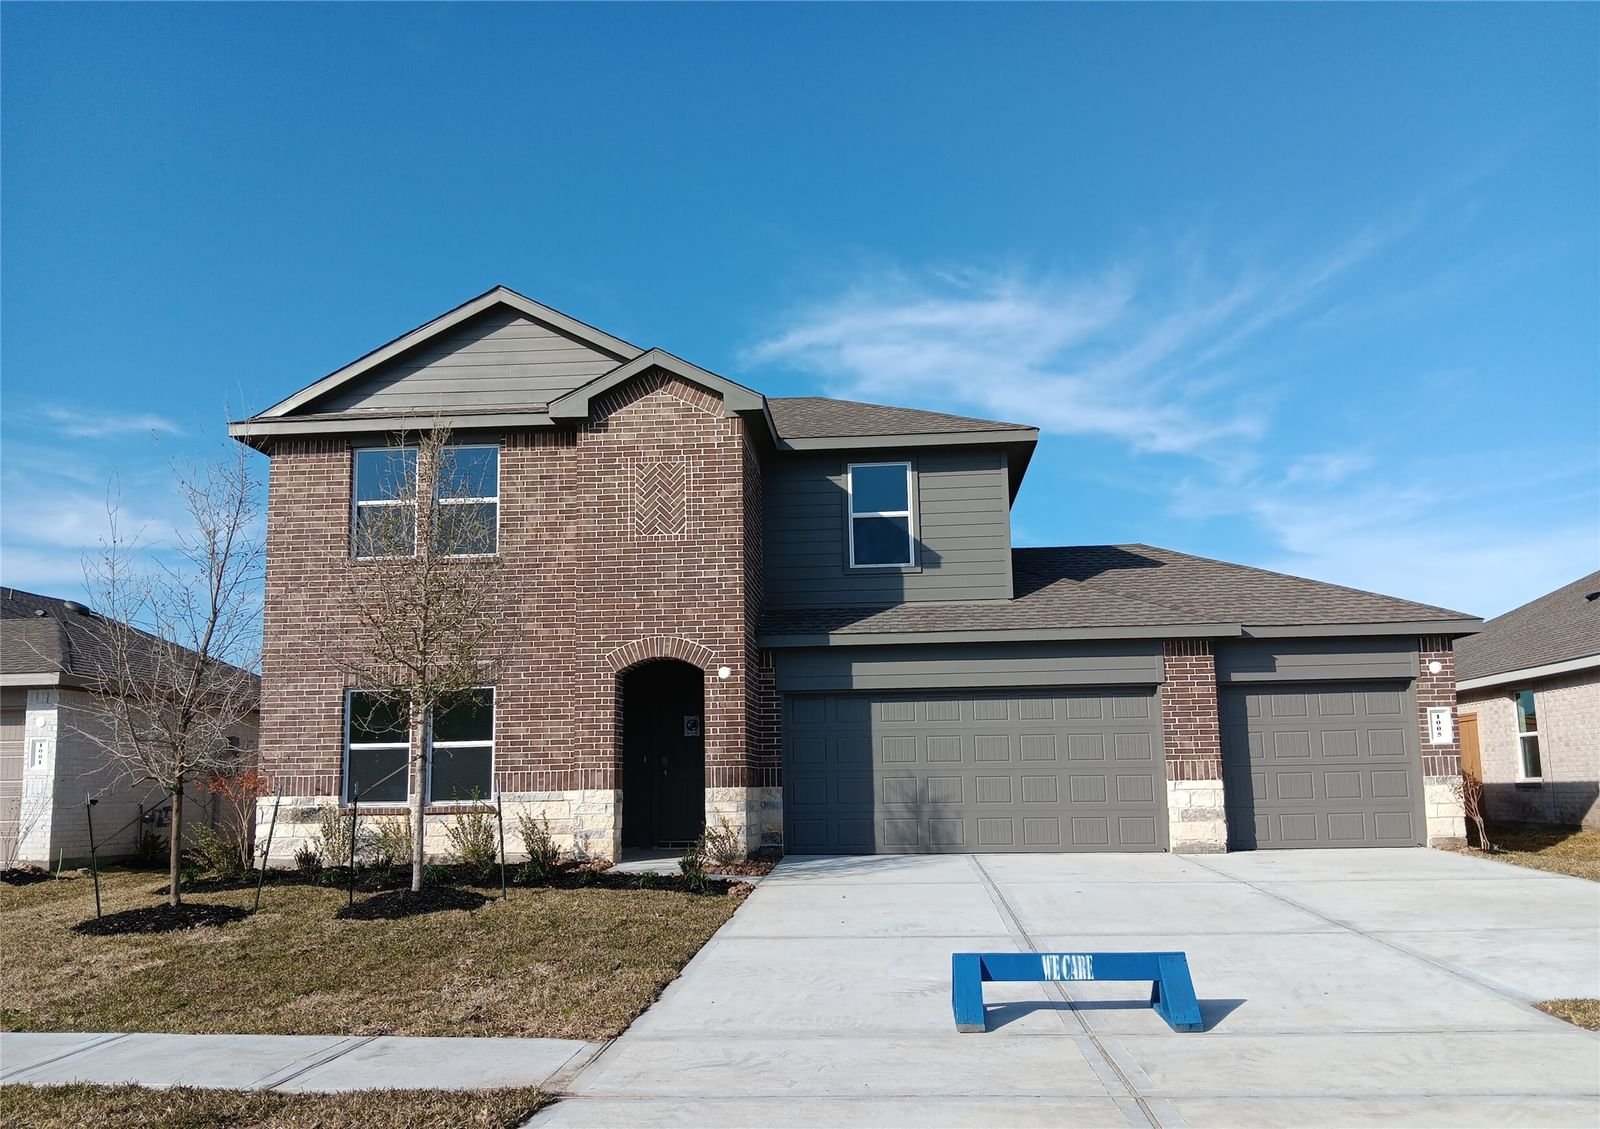 Real estate property located at 1005 Llano, Liberty, River Ranch Meadows, Dayton, TX, US